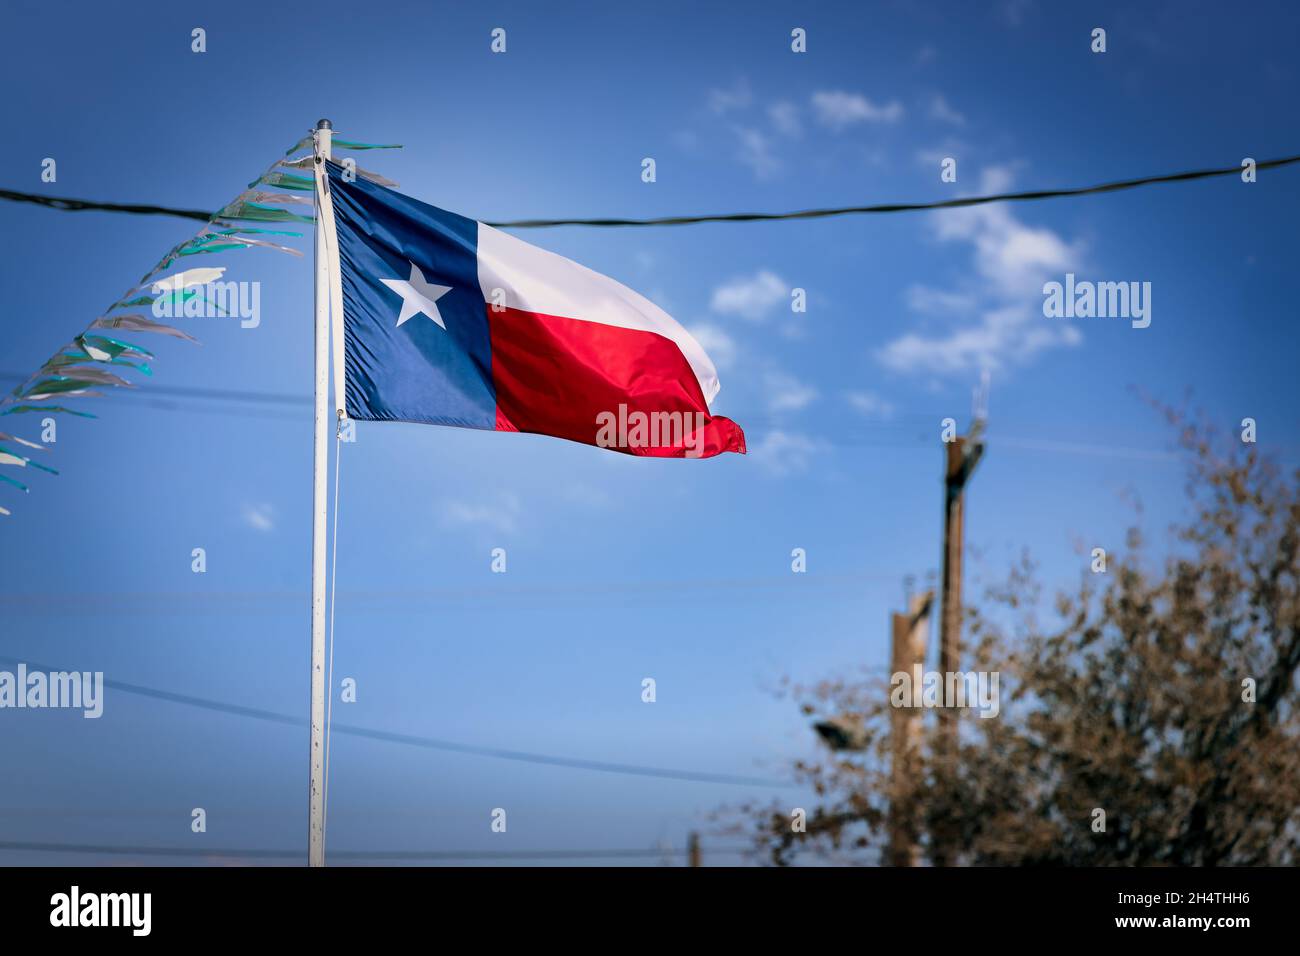 Le drapeau d'État du Texas, ou drapeau d'étoile de Lone, volant fièrement dans la petite ville frontalière de Fabens, Texas. Banque D'Images